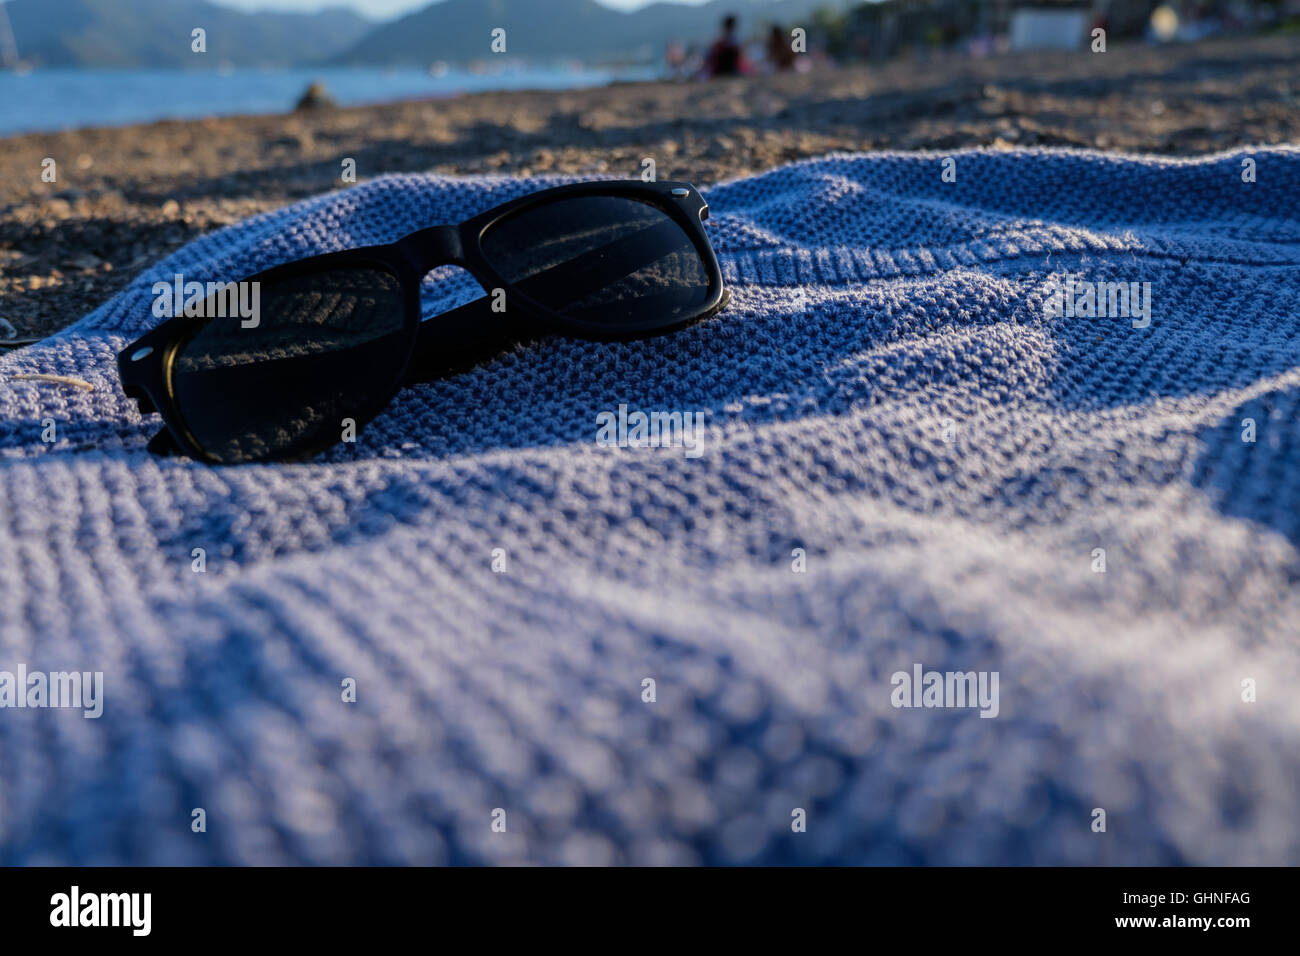 Lunettes de soleil sur une serviette bleue sur la plage Banque D'Images